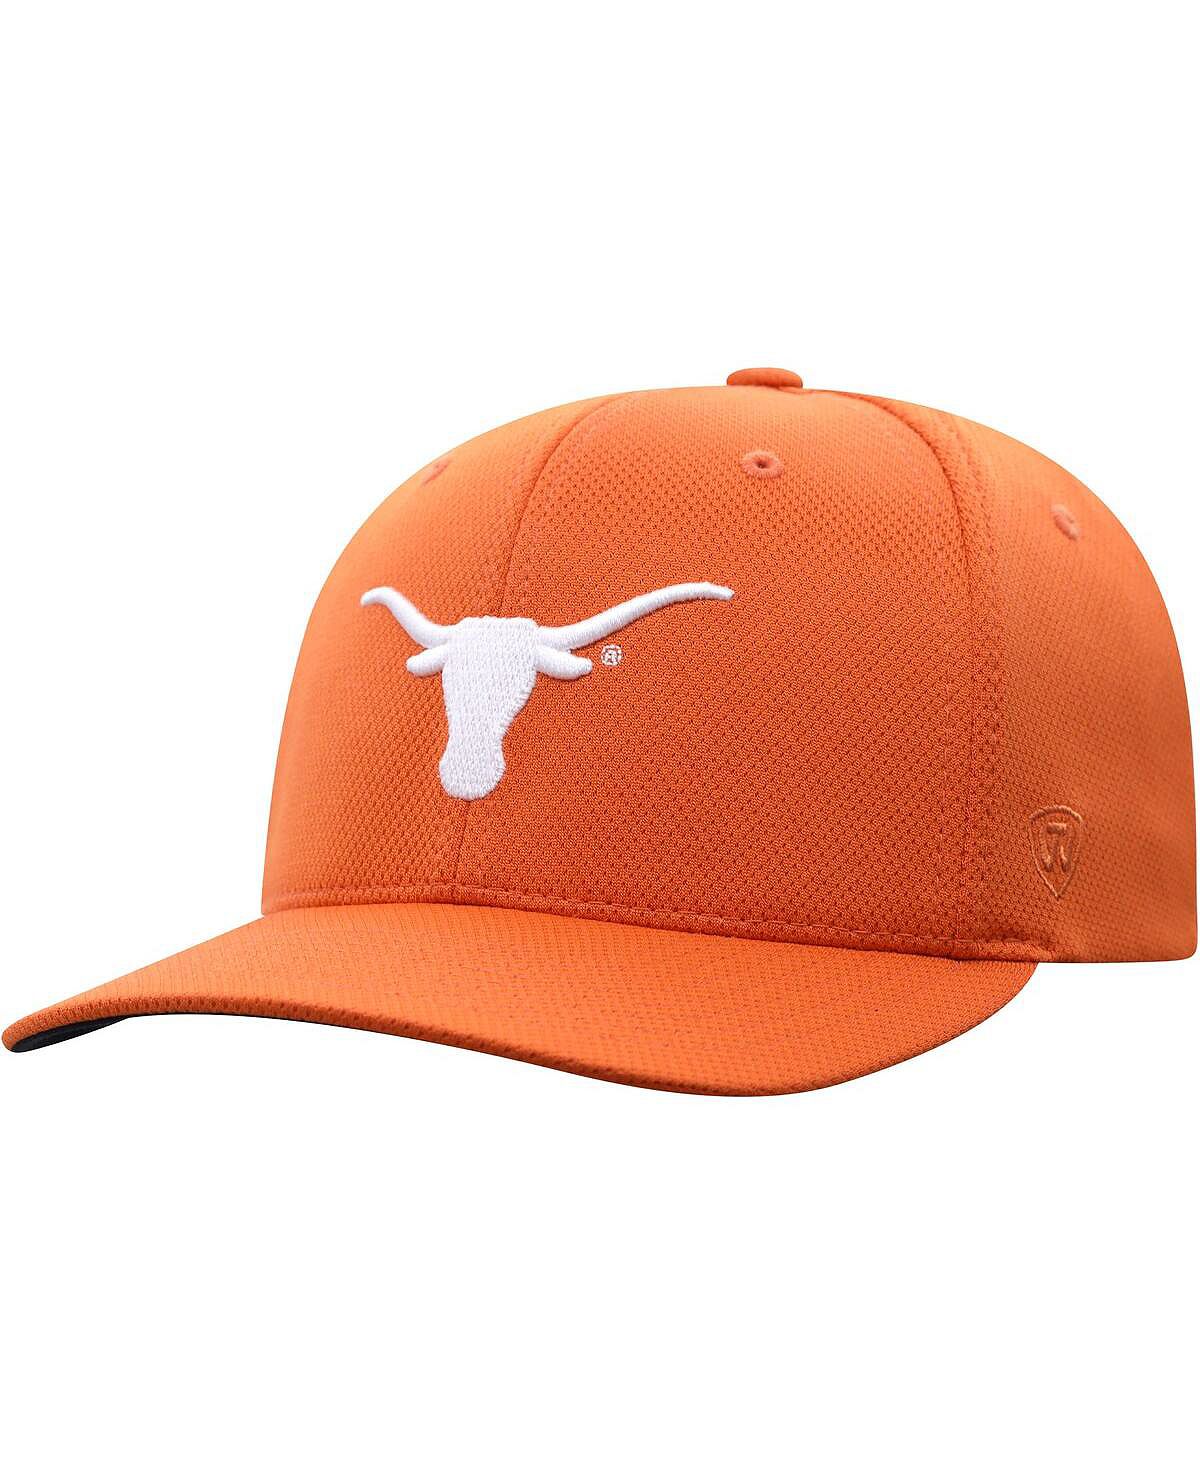 Мужская оранжевая кепка Texas Longhorns Reflex с логотипом Texas Orange Top of the World